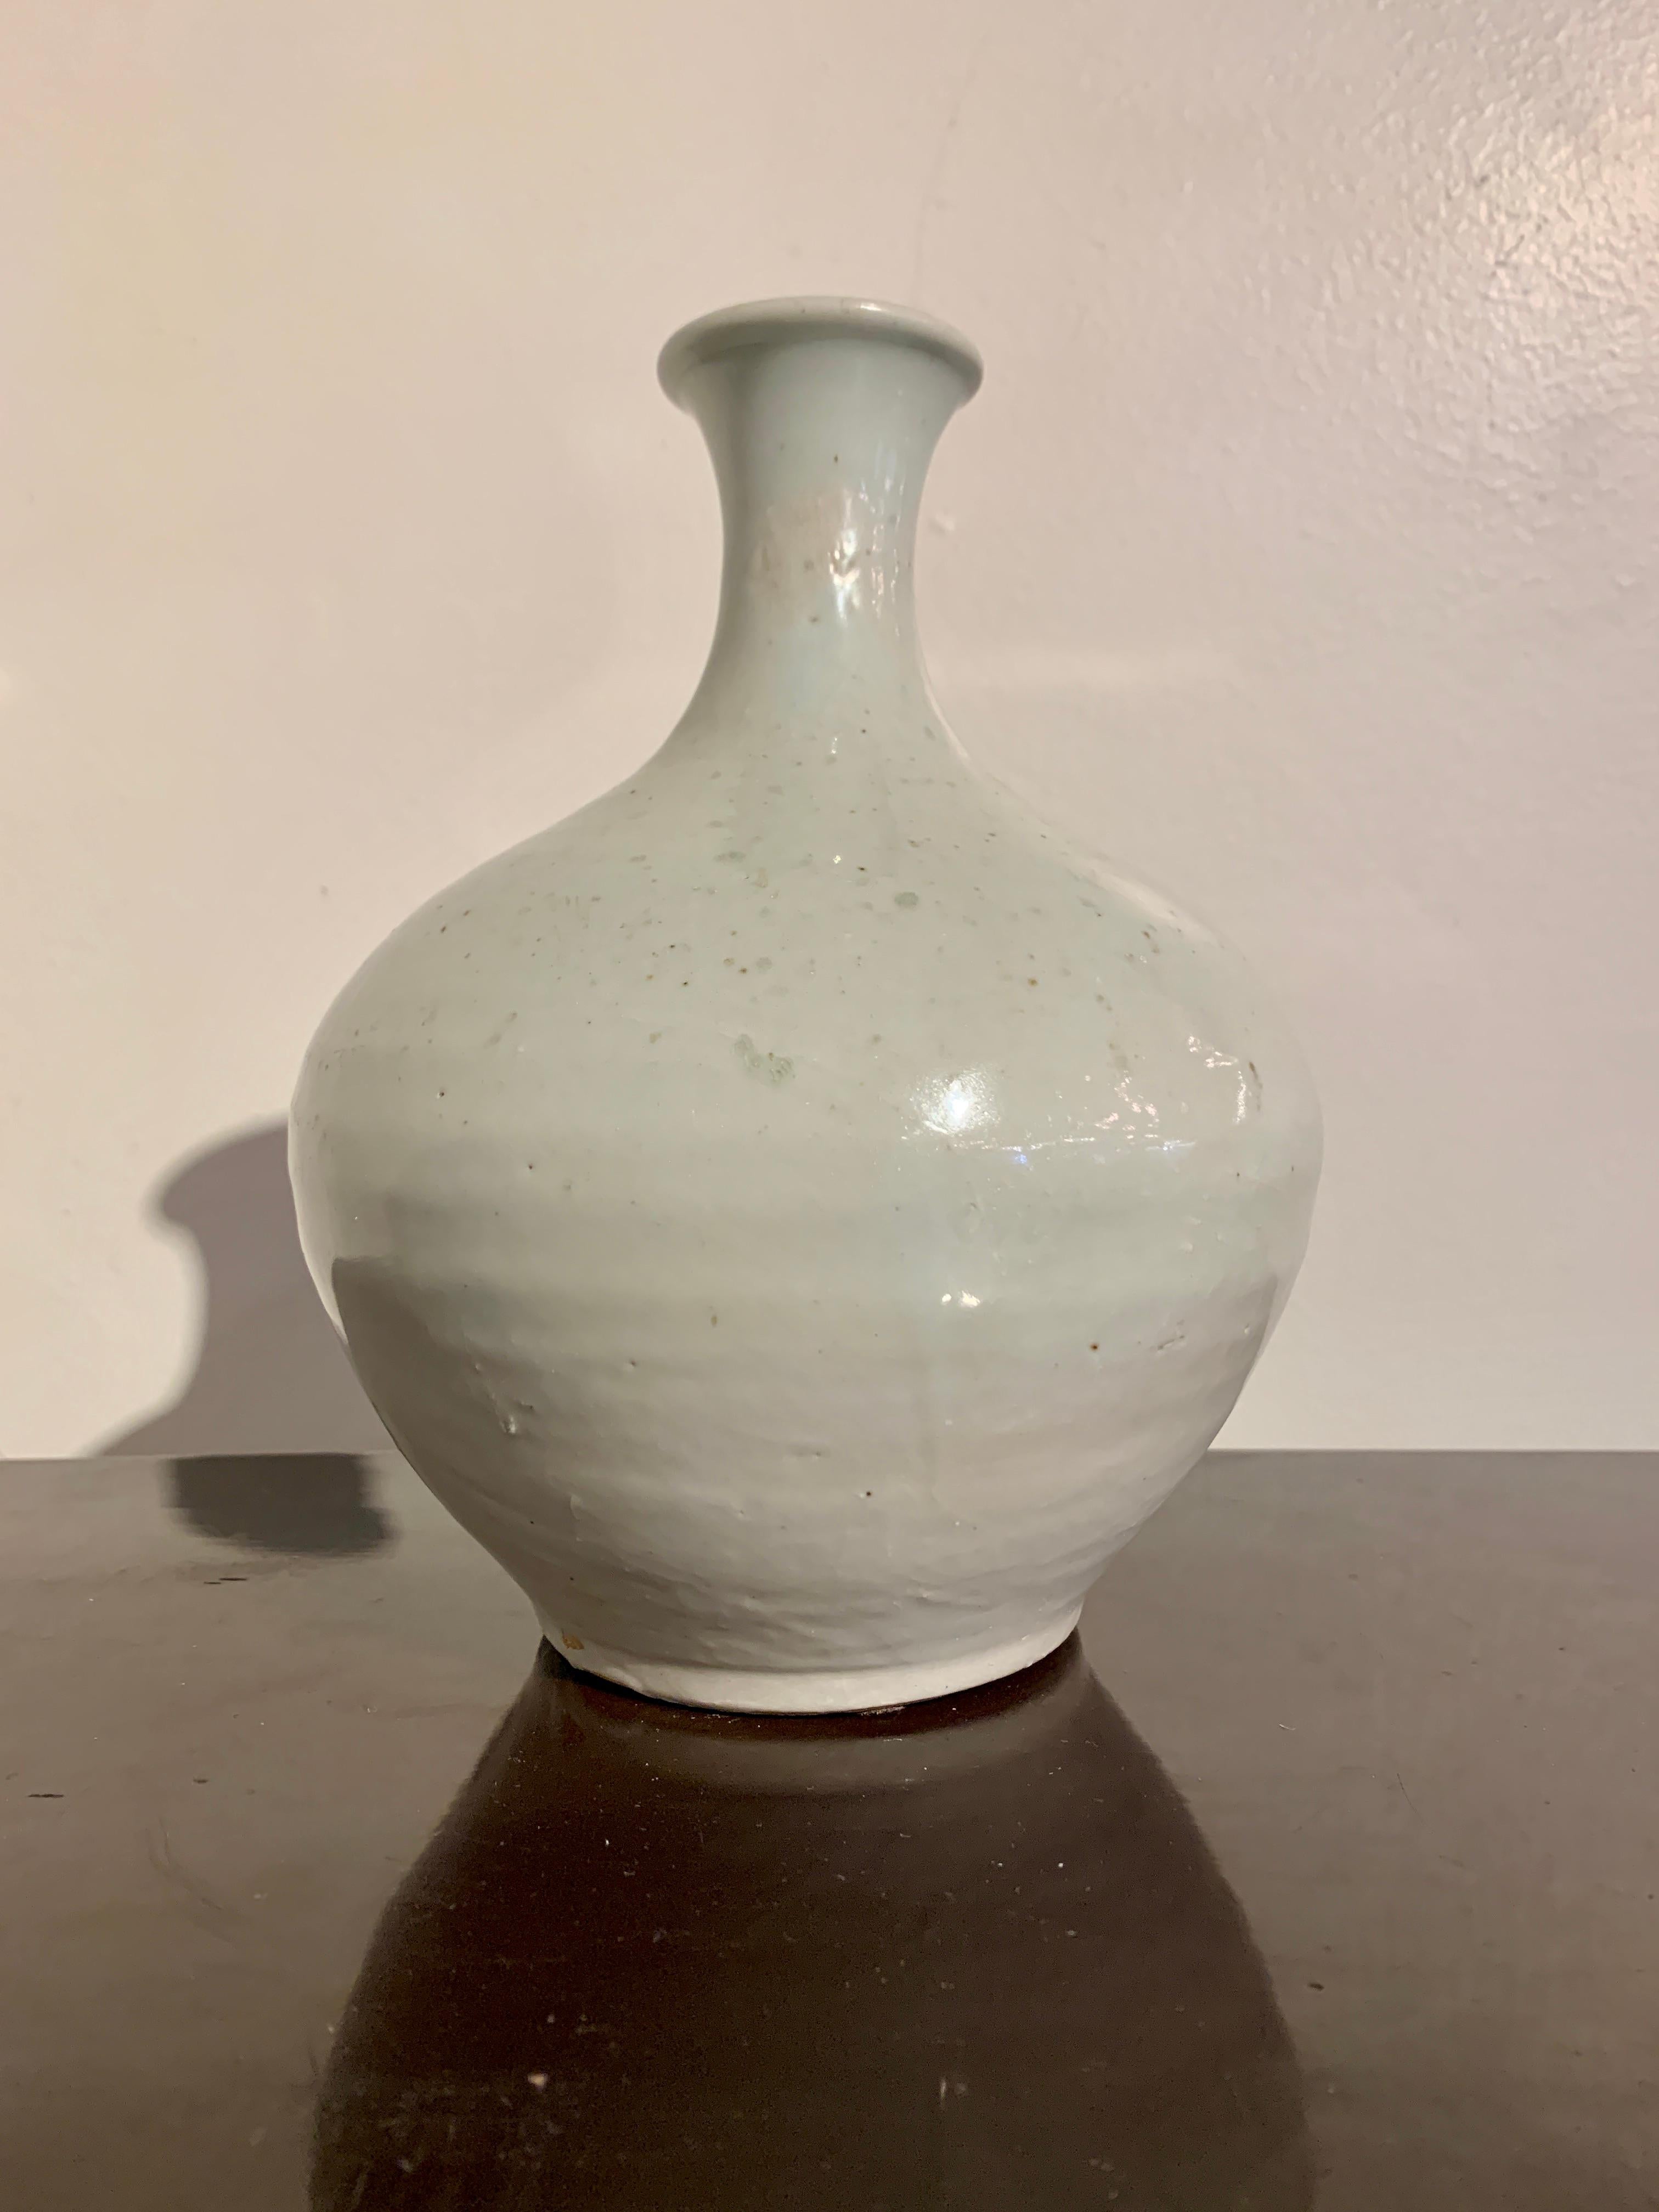 Feine und elegante koreanische Flaschenvase aus der Joseon-Dynastie aus weiß glasiertem Porzellan, 19. Jahrhundert, Korea.

Die Flaschenvase hat einen ungewöhnlichen kugelförmigen Körper, einen schmalen Hals und eine leicht umgedrehte Mündung, die